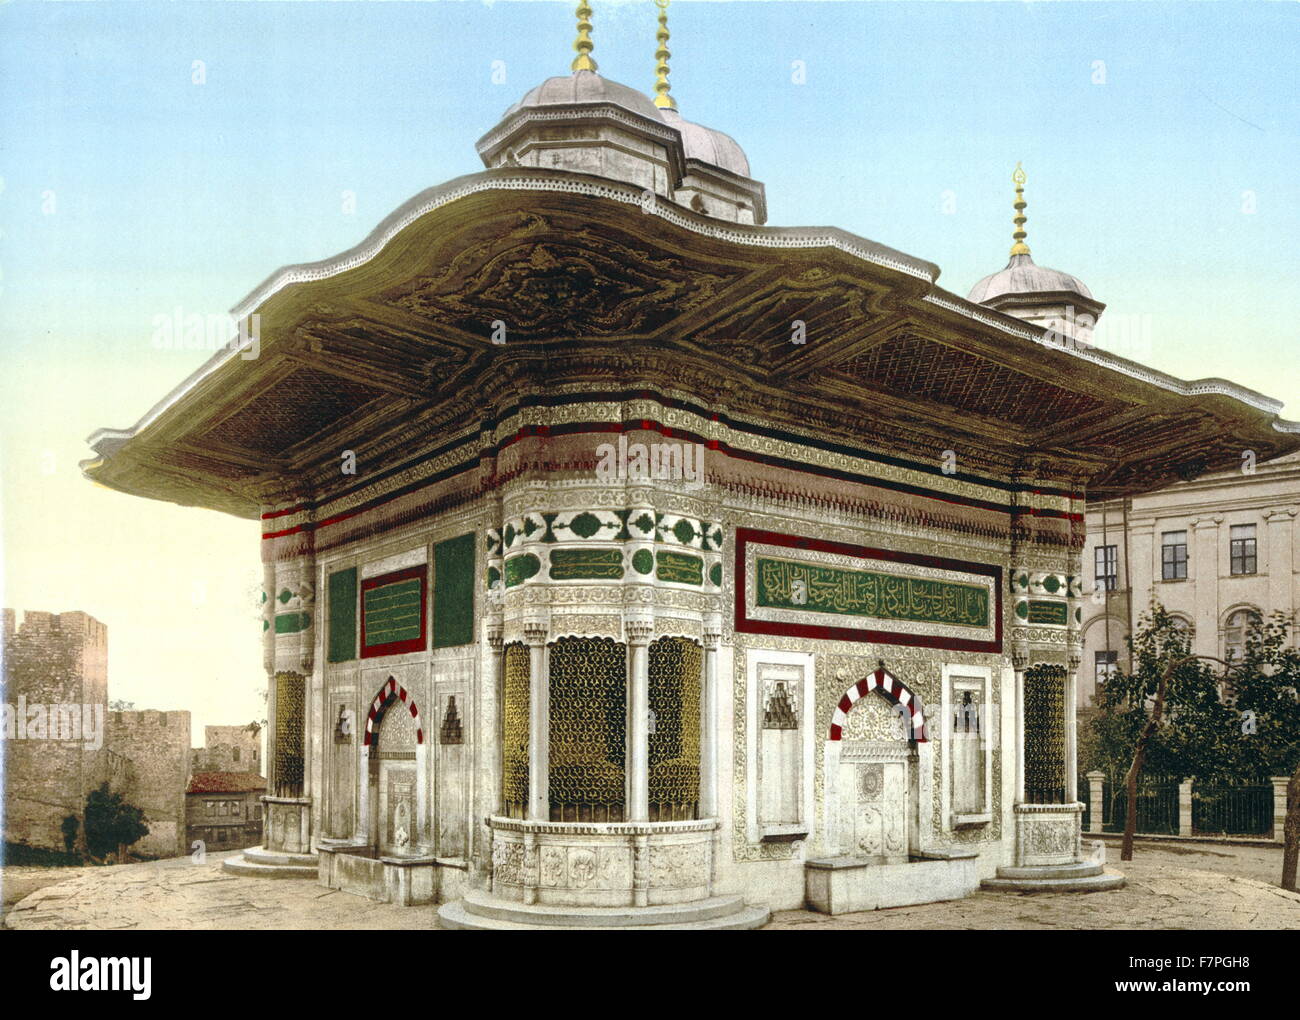 Fotomechanischen Print des Brunnens von Sultan Ahmed, Konstantinopel, Türkei. Datiert 1890 Stockfoto